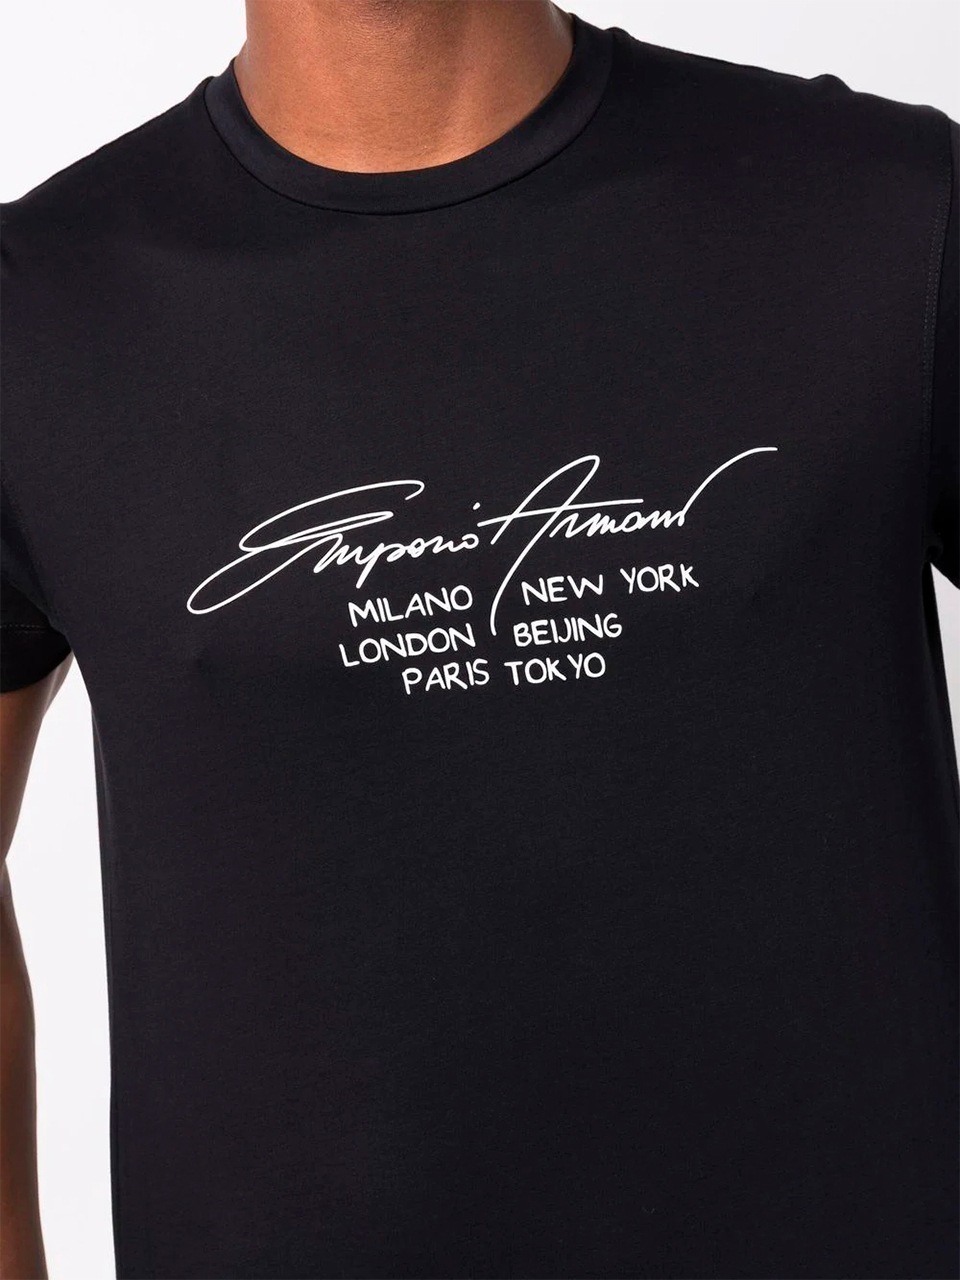 Imagem de: Camiseta Emporio Armani Preta com Estampa Gráfica